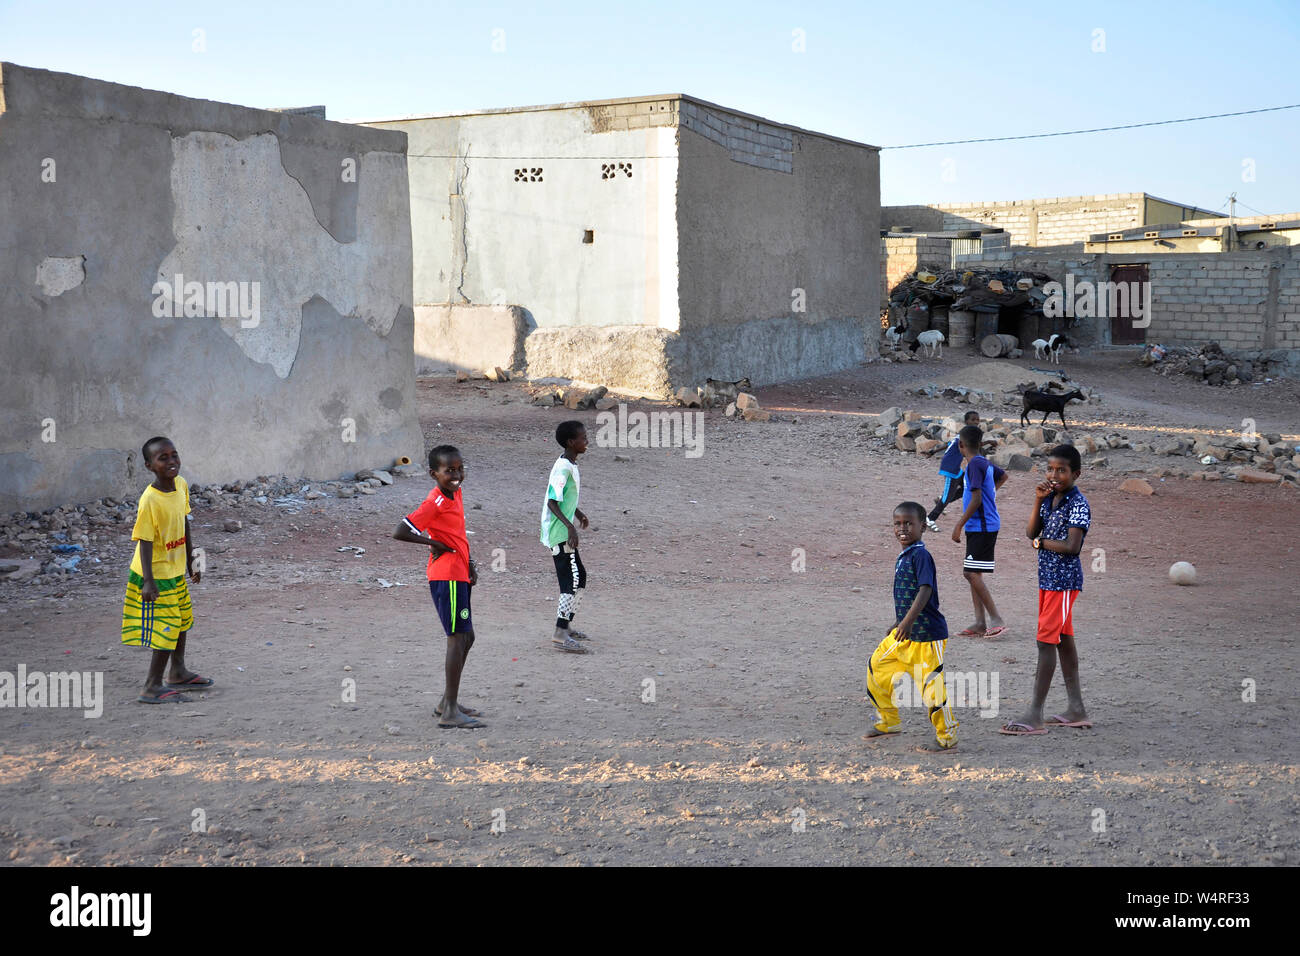 Djibouti, Ali Sabieh, daily life Stock Photo